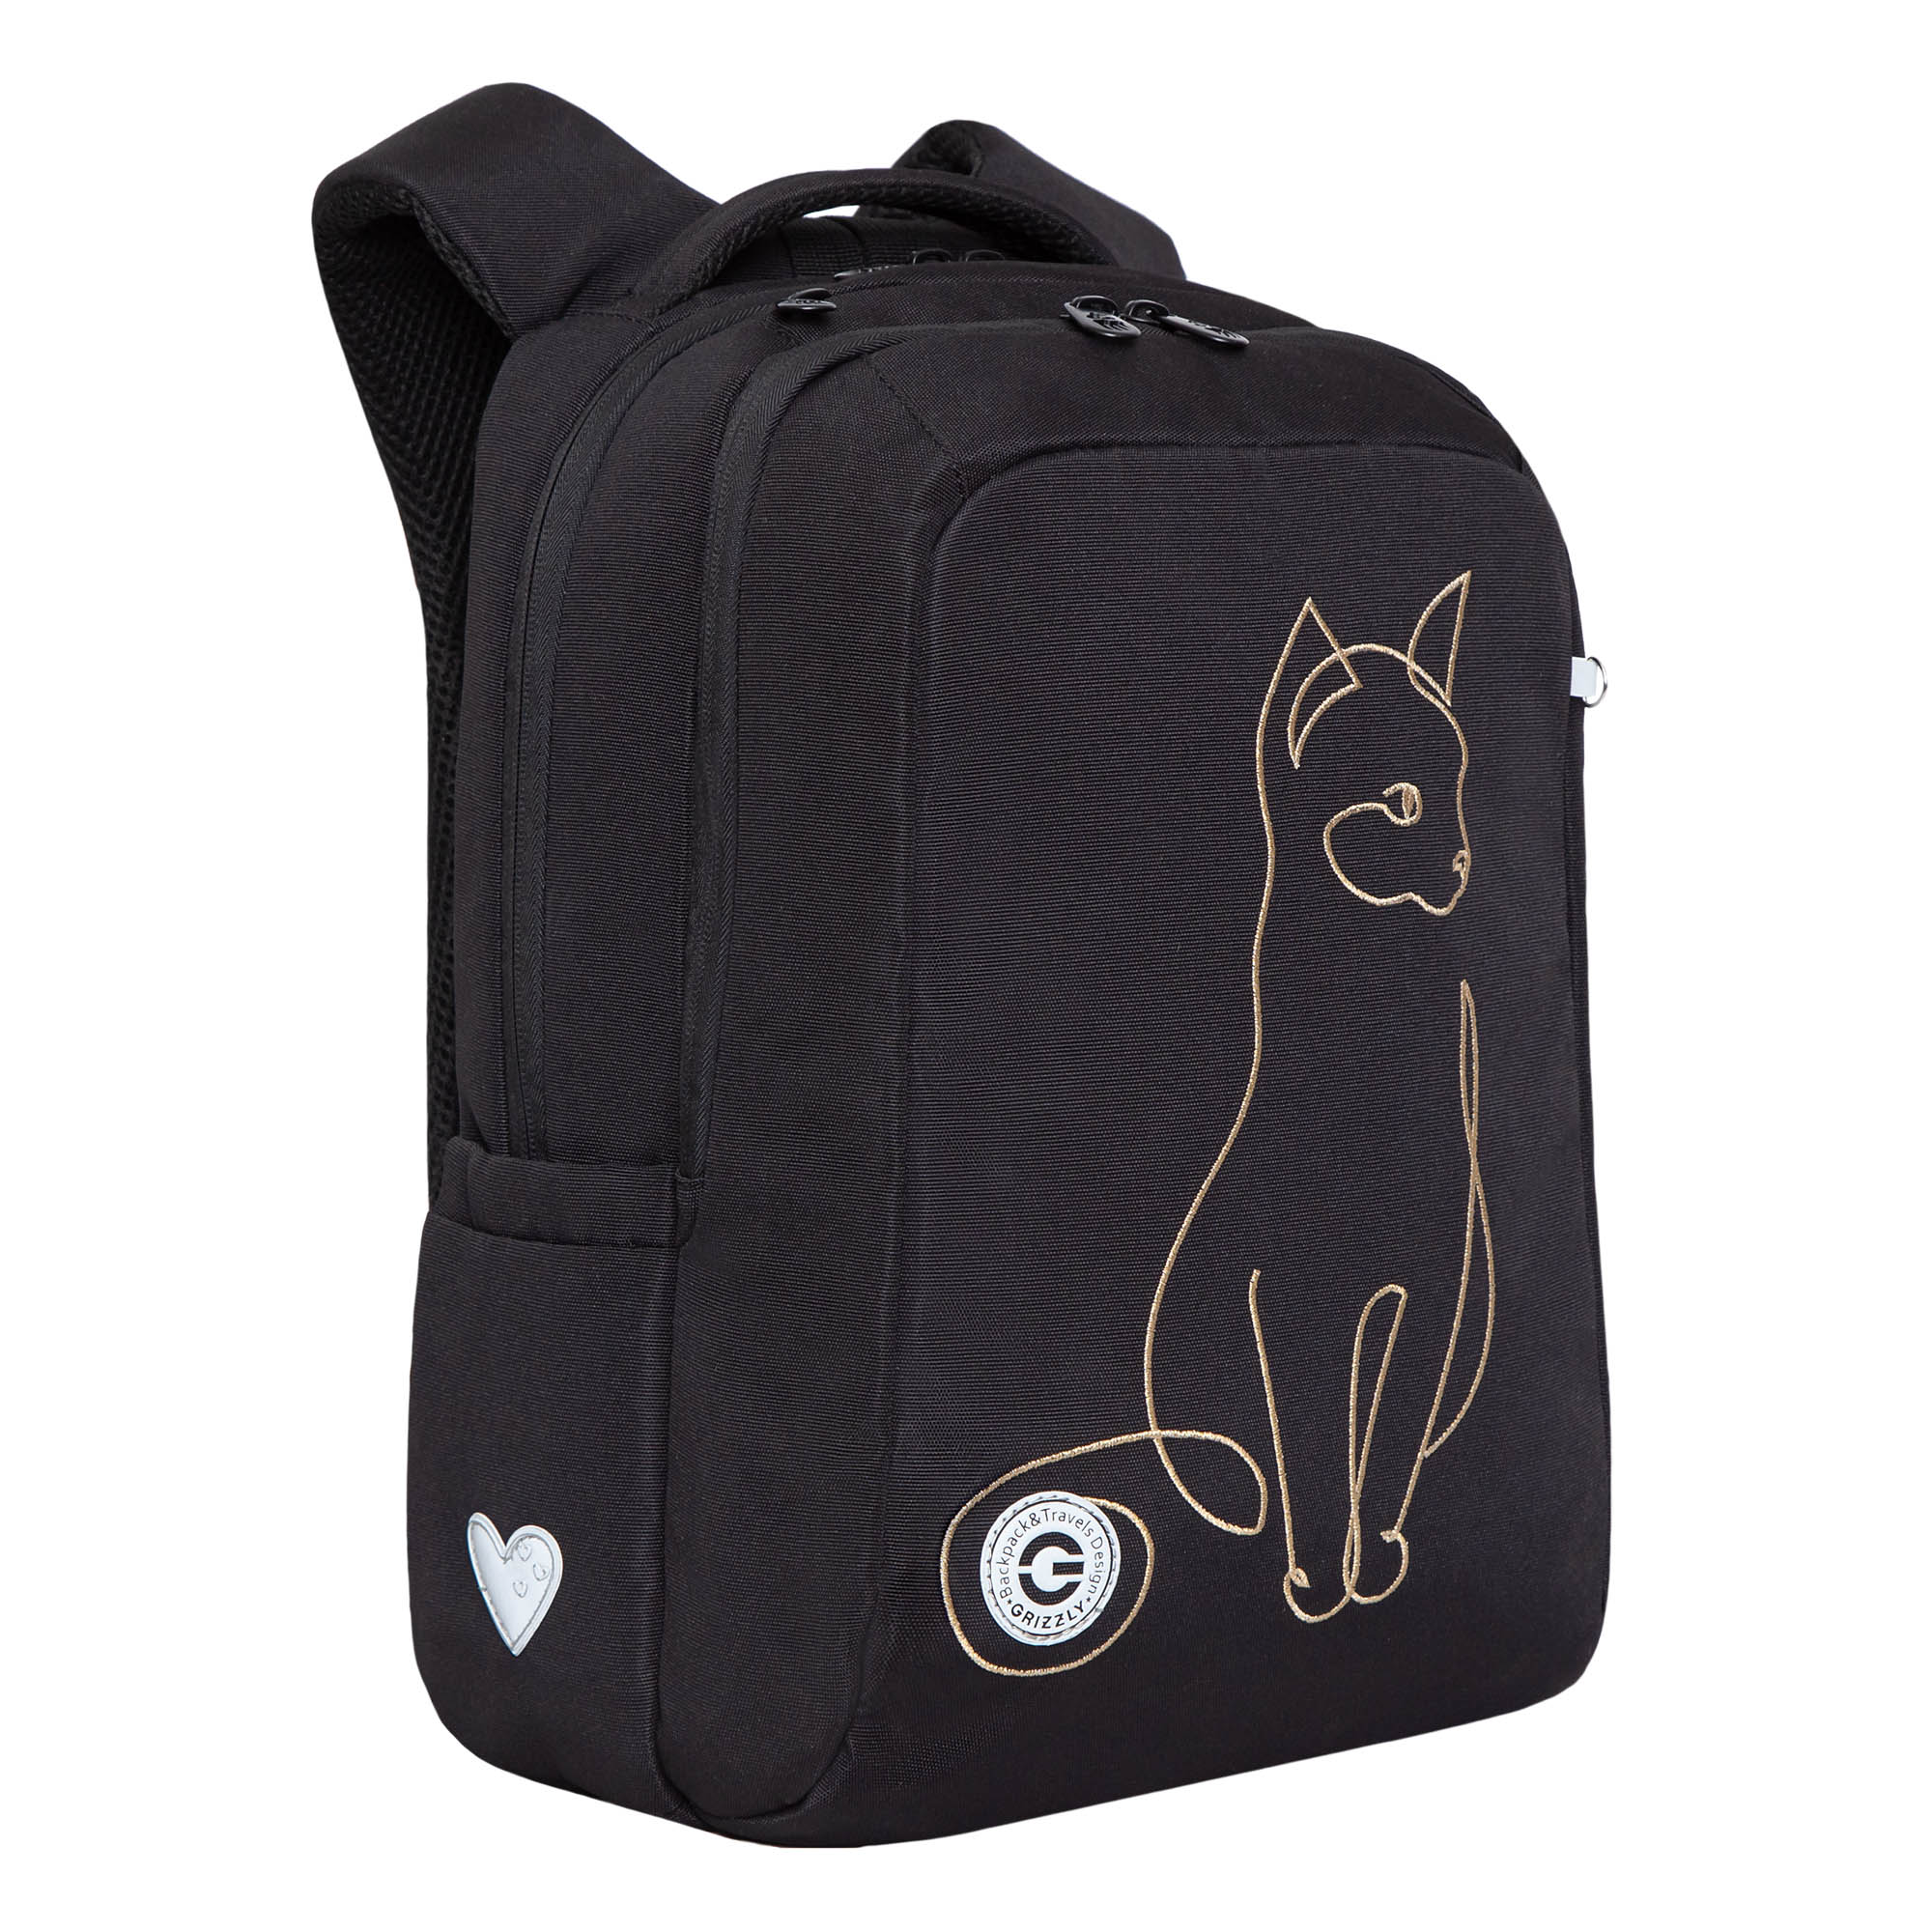 Рюкзак школьный Grizzly Черный RG-366-2/1 - фото 2